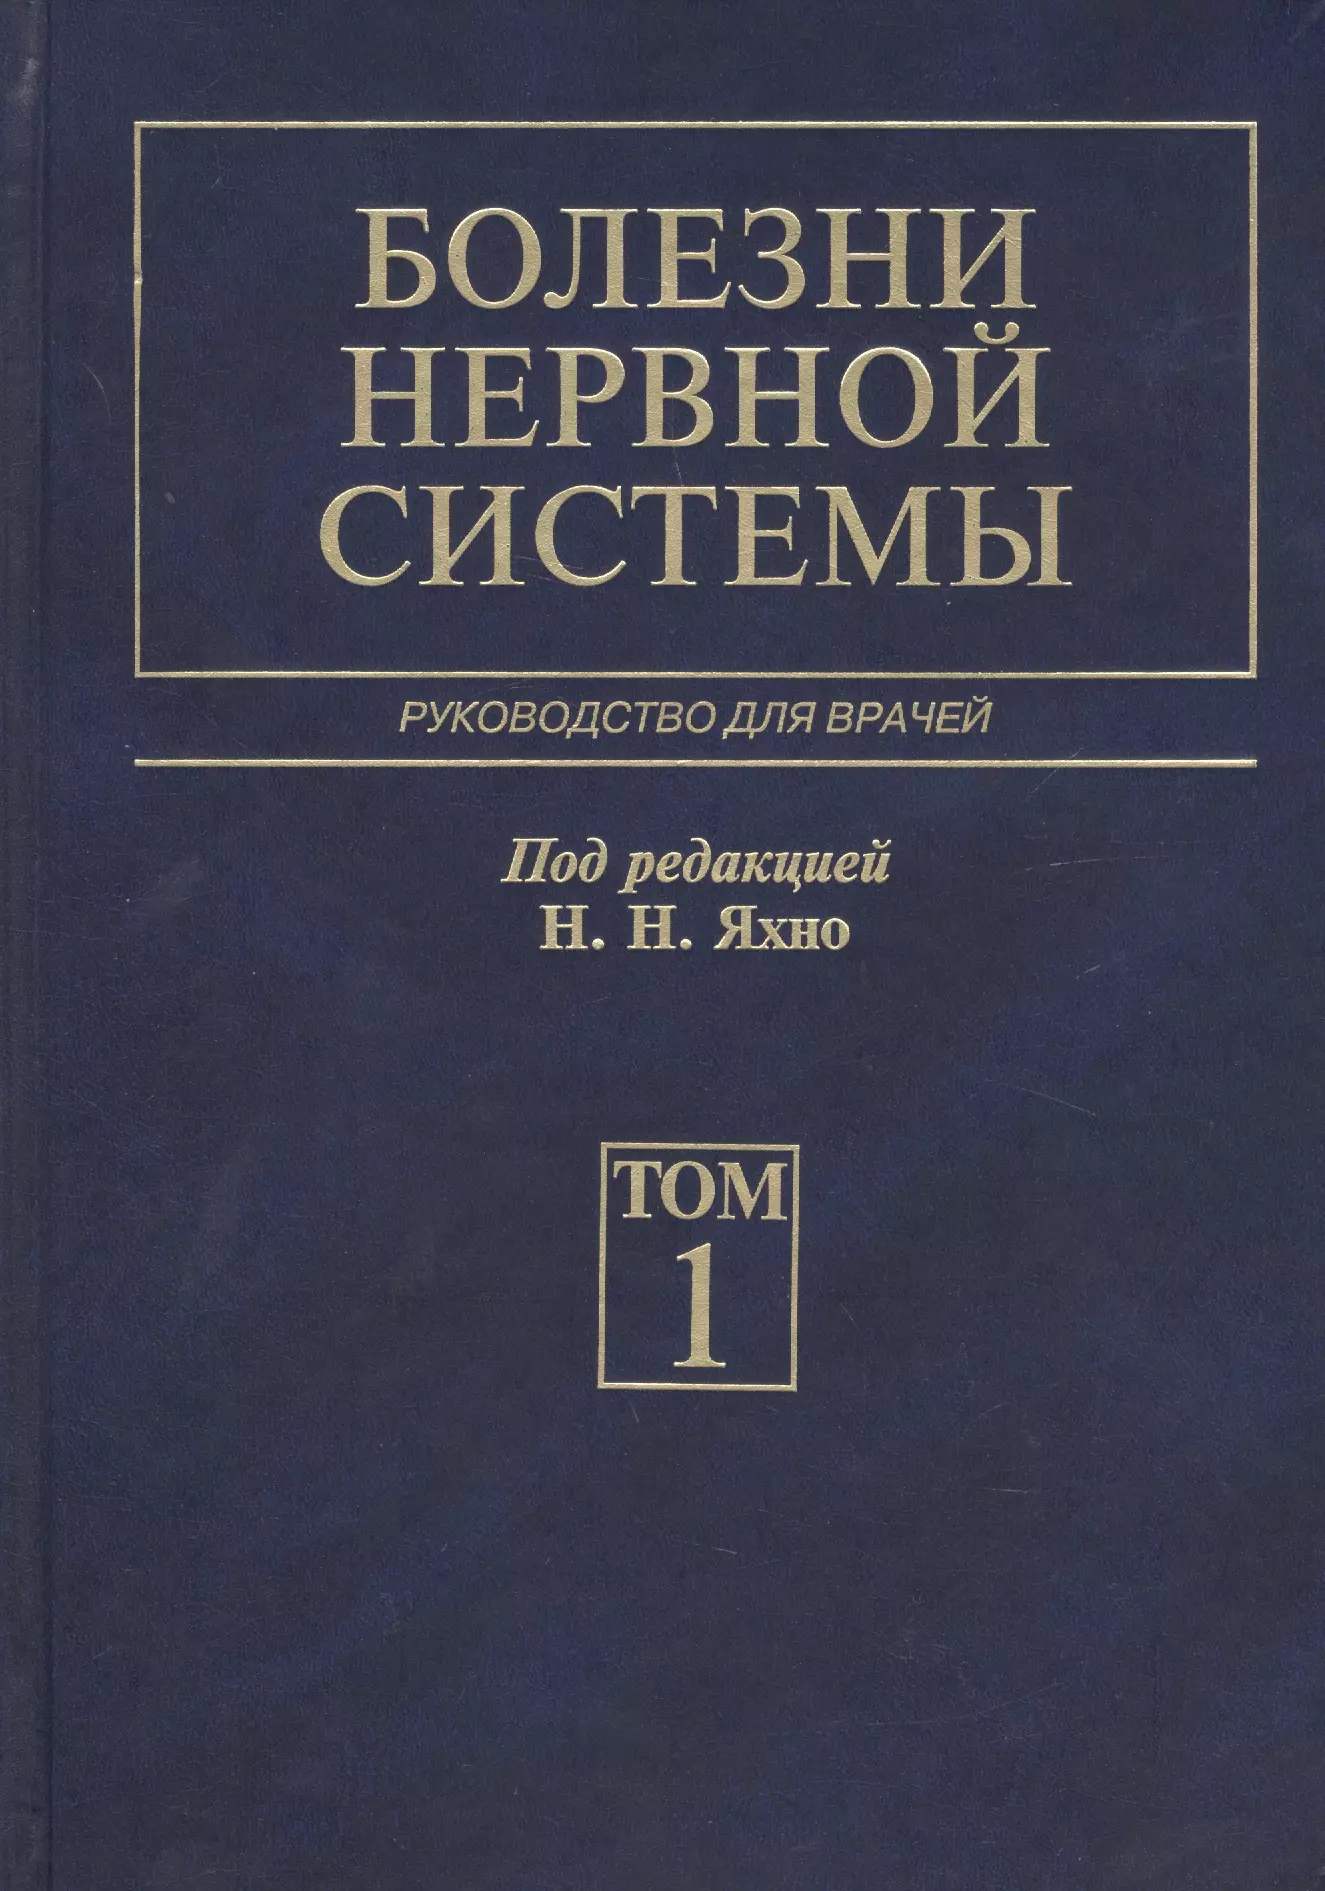 Яхно Николай Николаевич - Болезни нервной системы. В 2 т. 4-е изд., перераб. и доп